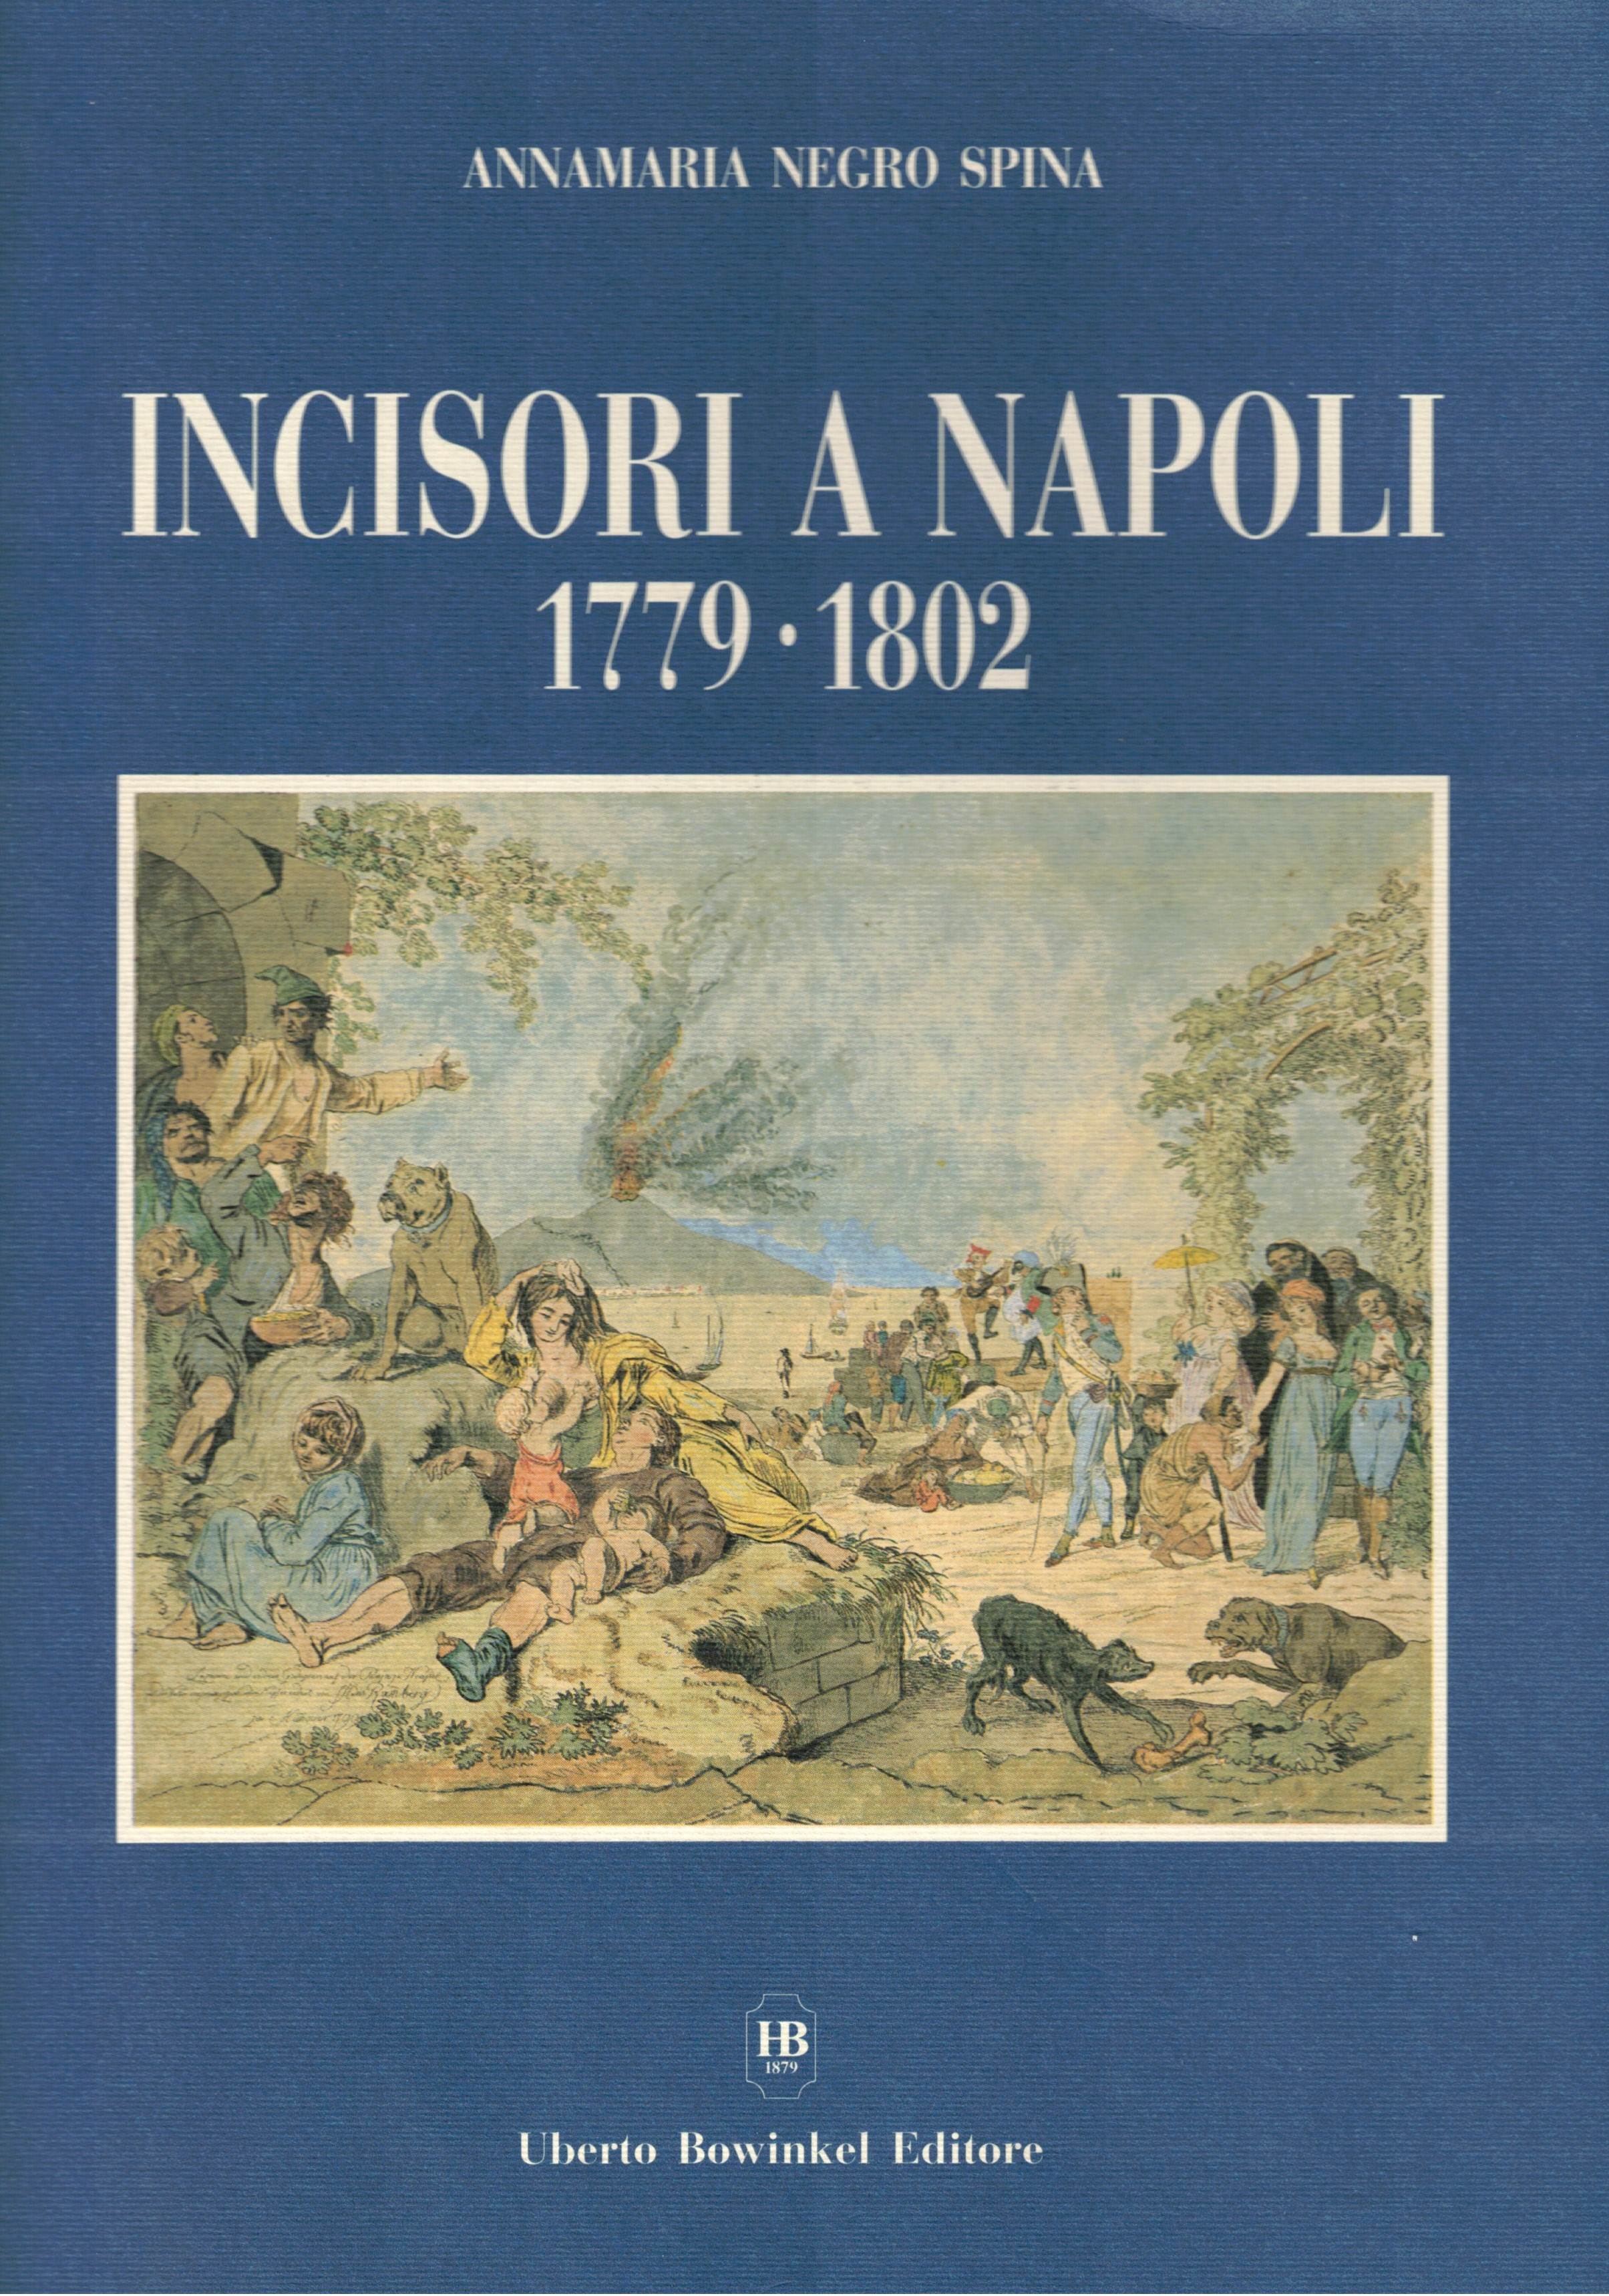 INCISORI A NAPOLI 1779 - 1802